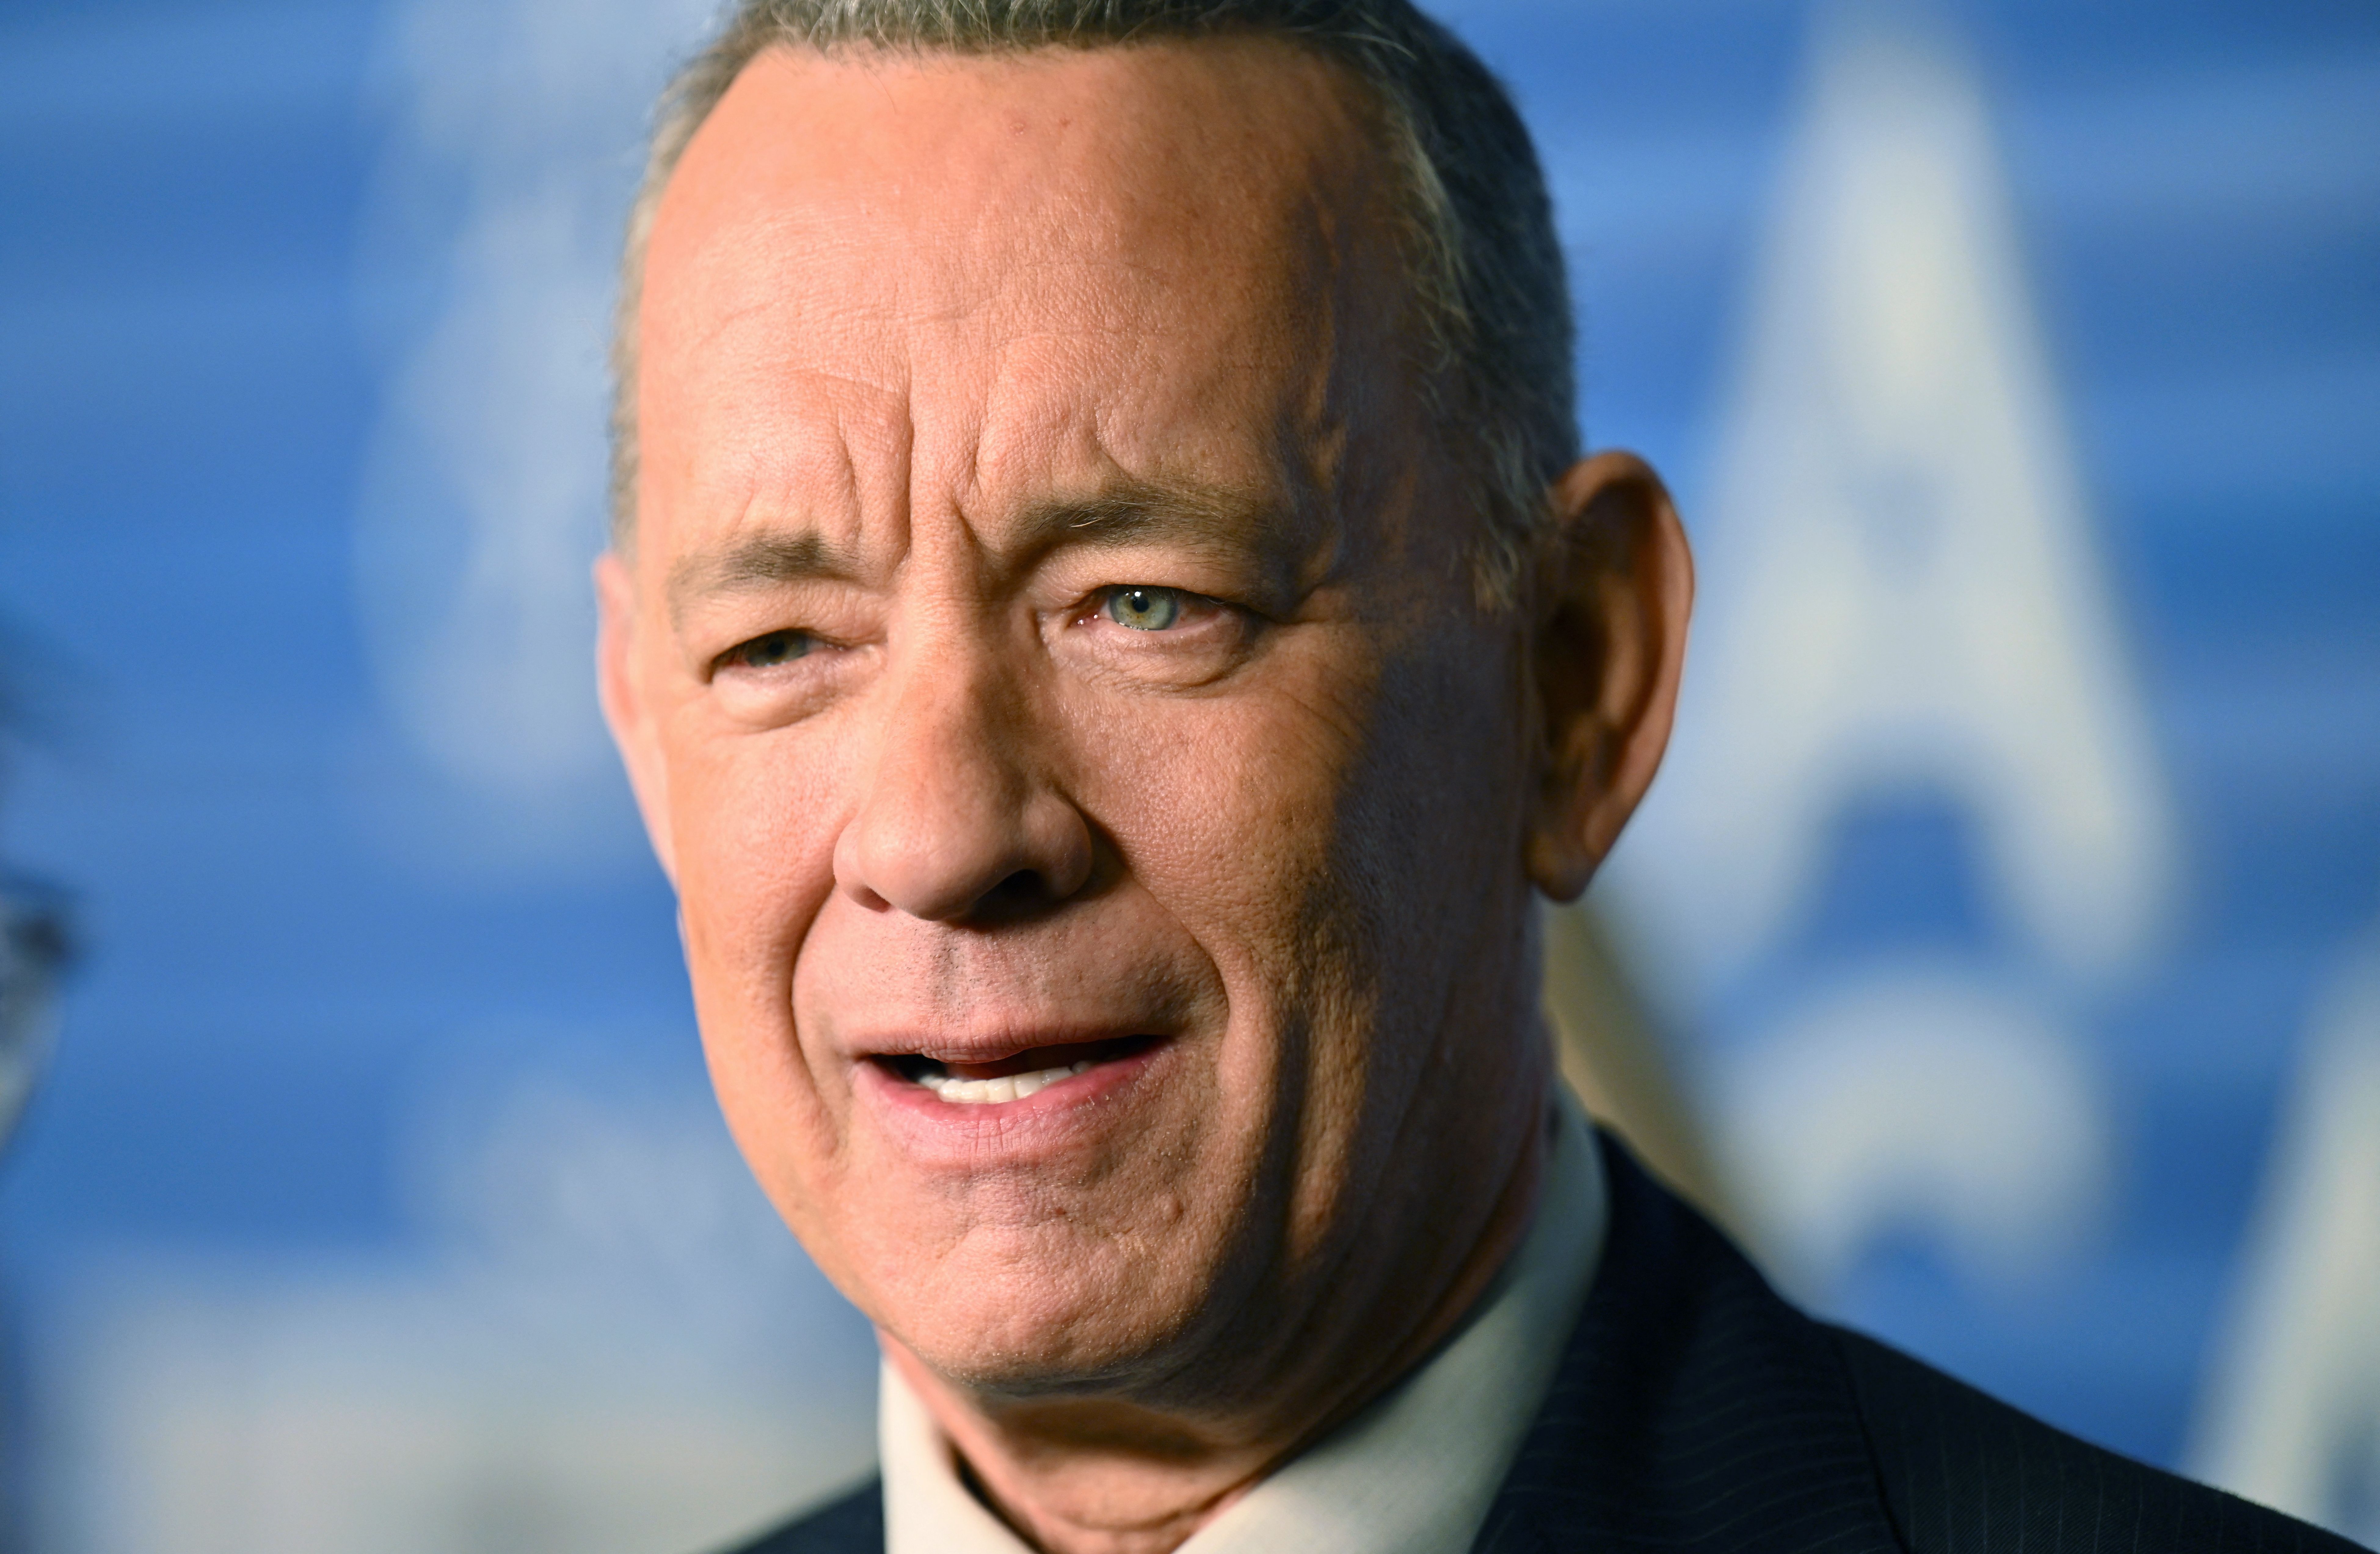 Tom Hanks asiste a la proyección especial de "A Man Called Otto" en Nueva York el 9 de enero de 2023. | Fuente: Getty Images